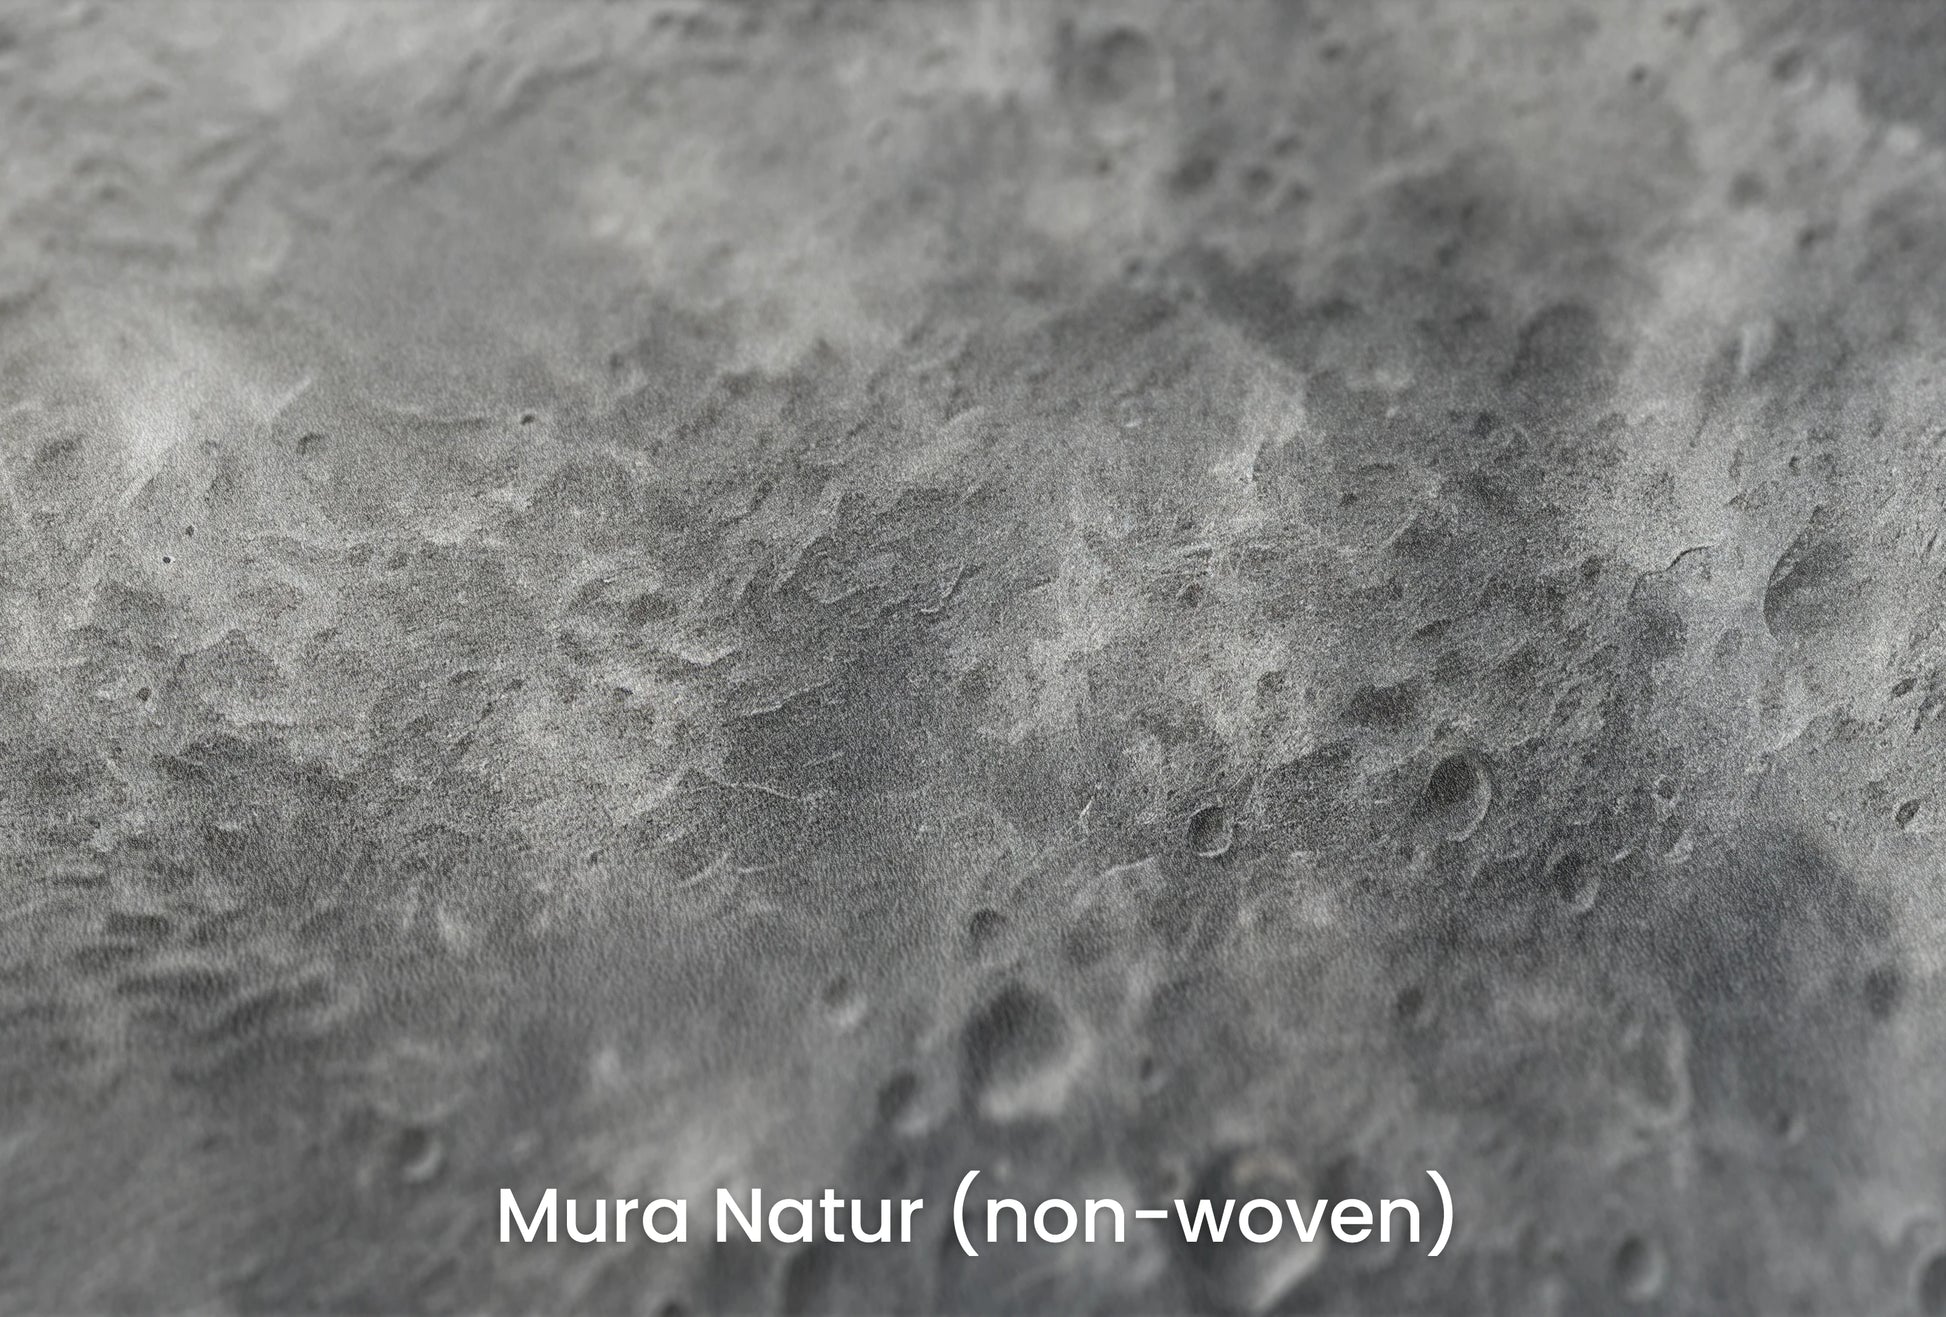 Zbliżenie na artystyczną fototapetę o nazwie Mercury's Texture na podłożu Mura Natur (non-woven) - naturalne i ekologiczne podłoże.